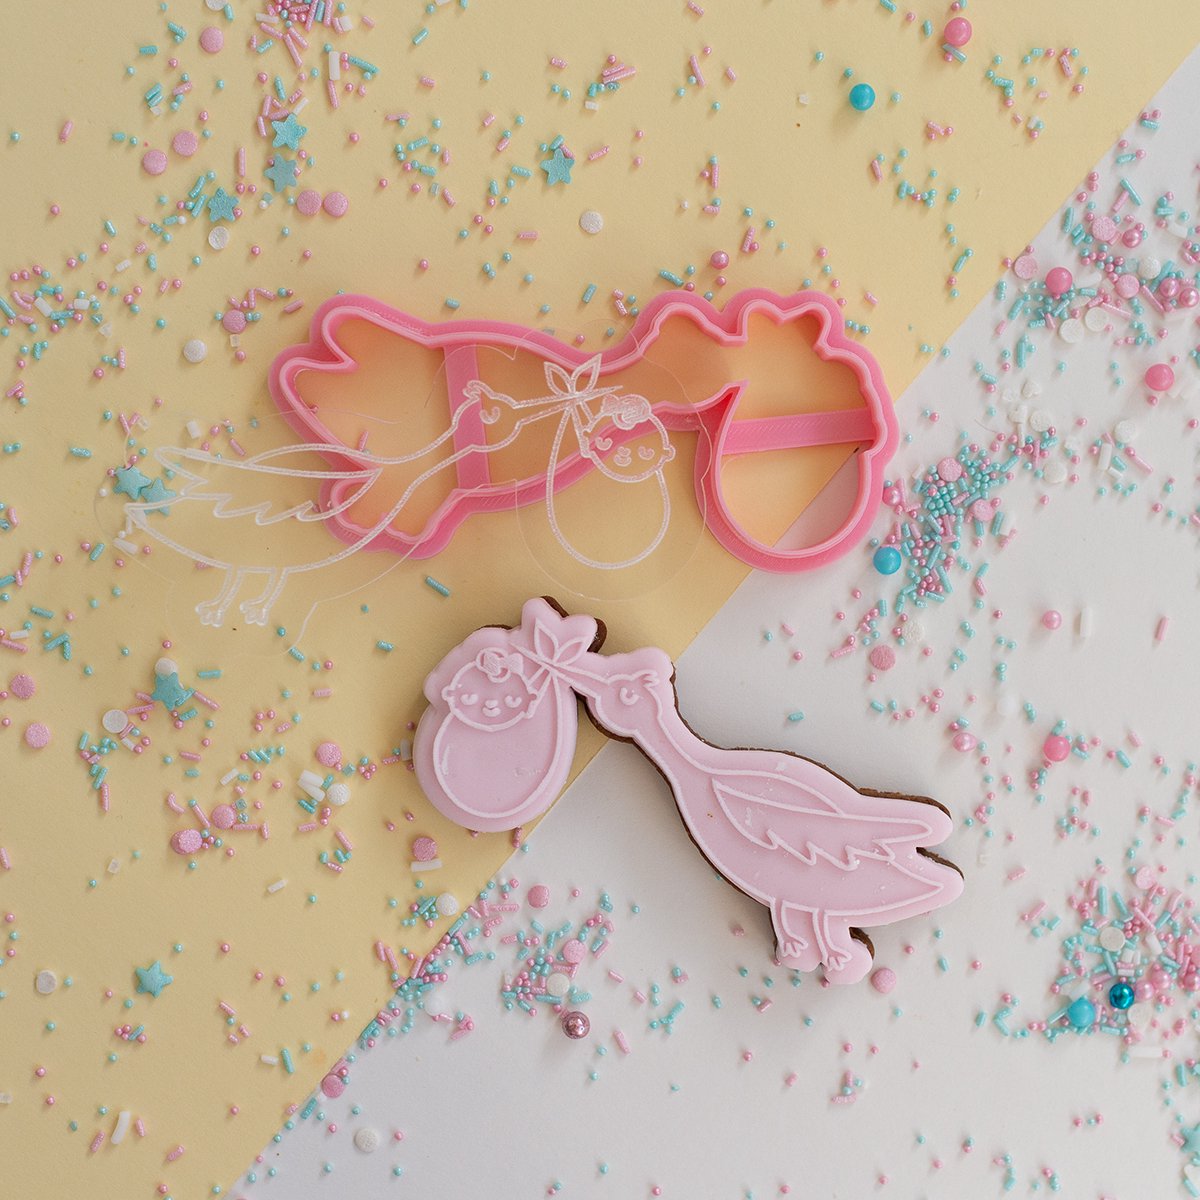 Ooievaar - Embosser met cookie cutter | Baby collectie